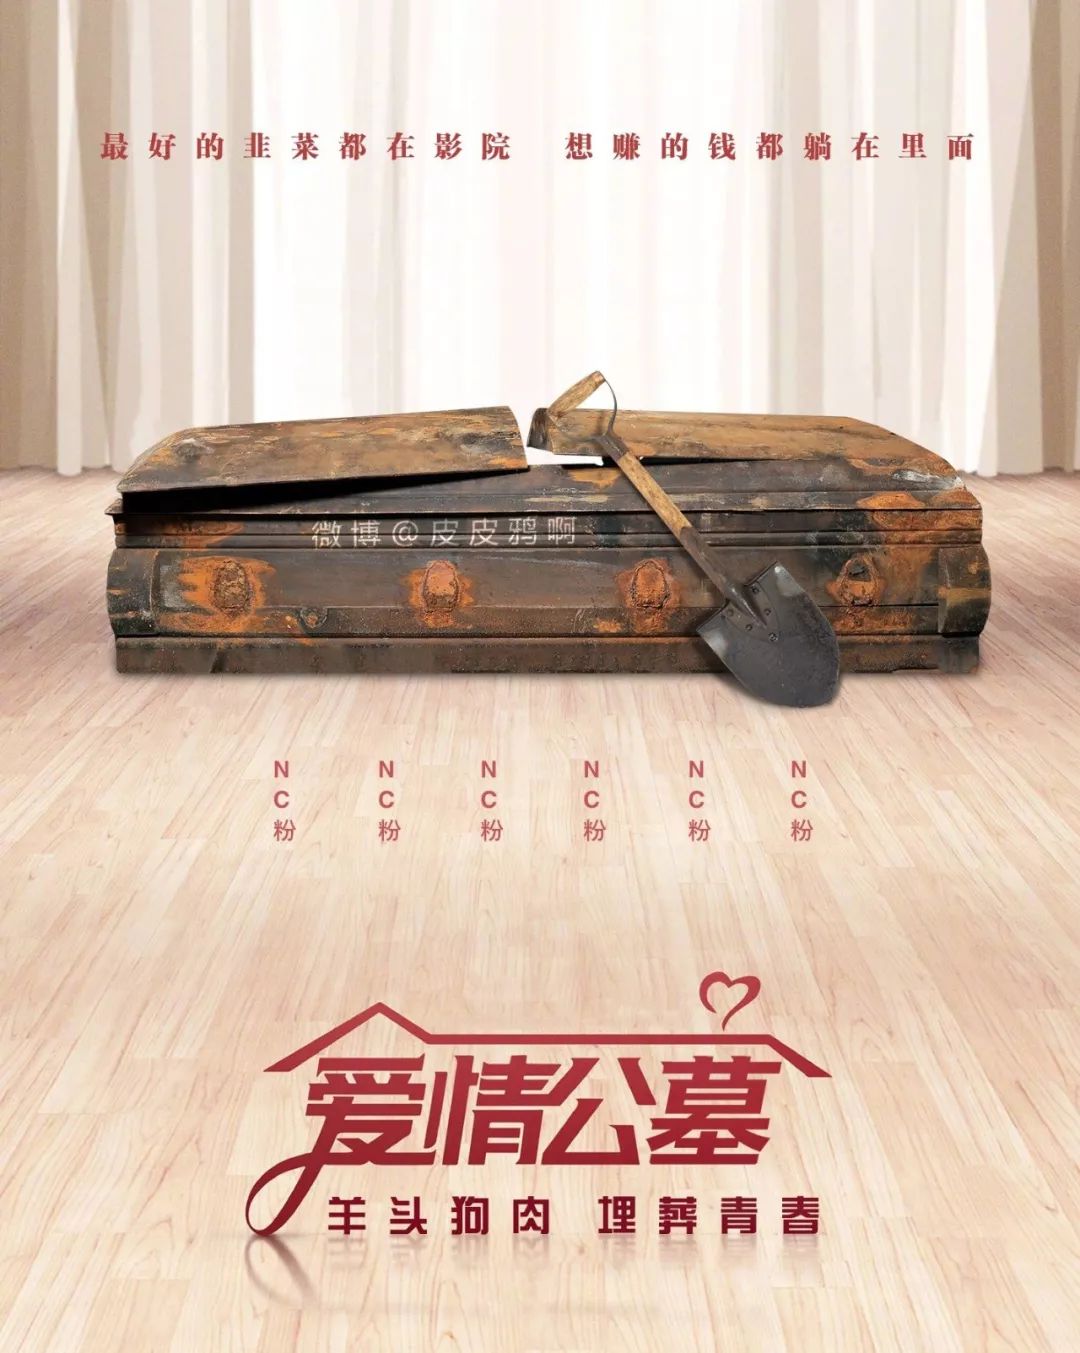 《爱情公寓》的票房不跳水,中国电影才要完蛋